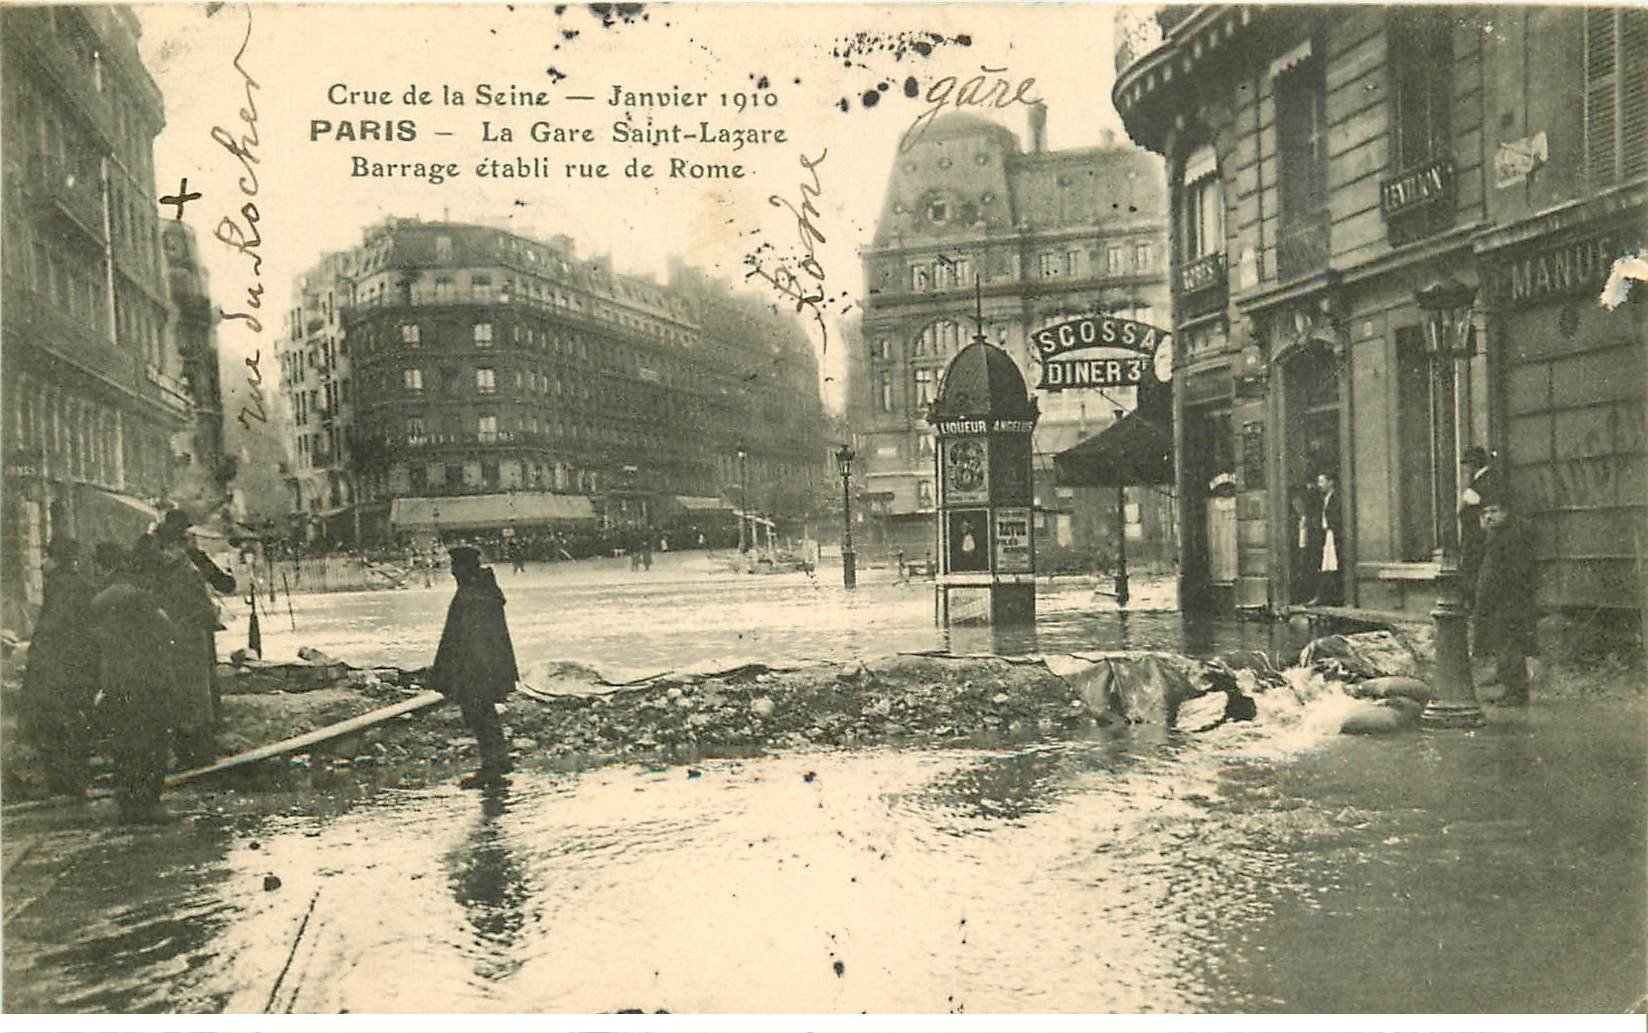 INONDATION ET CRUE DE PARIS 1910. Gare Saint-Lazare barrage rue de Rome